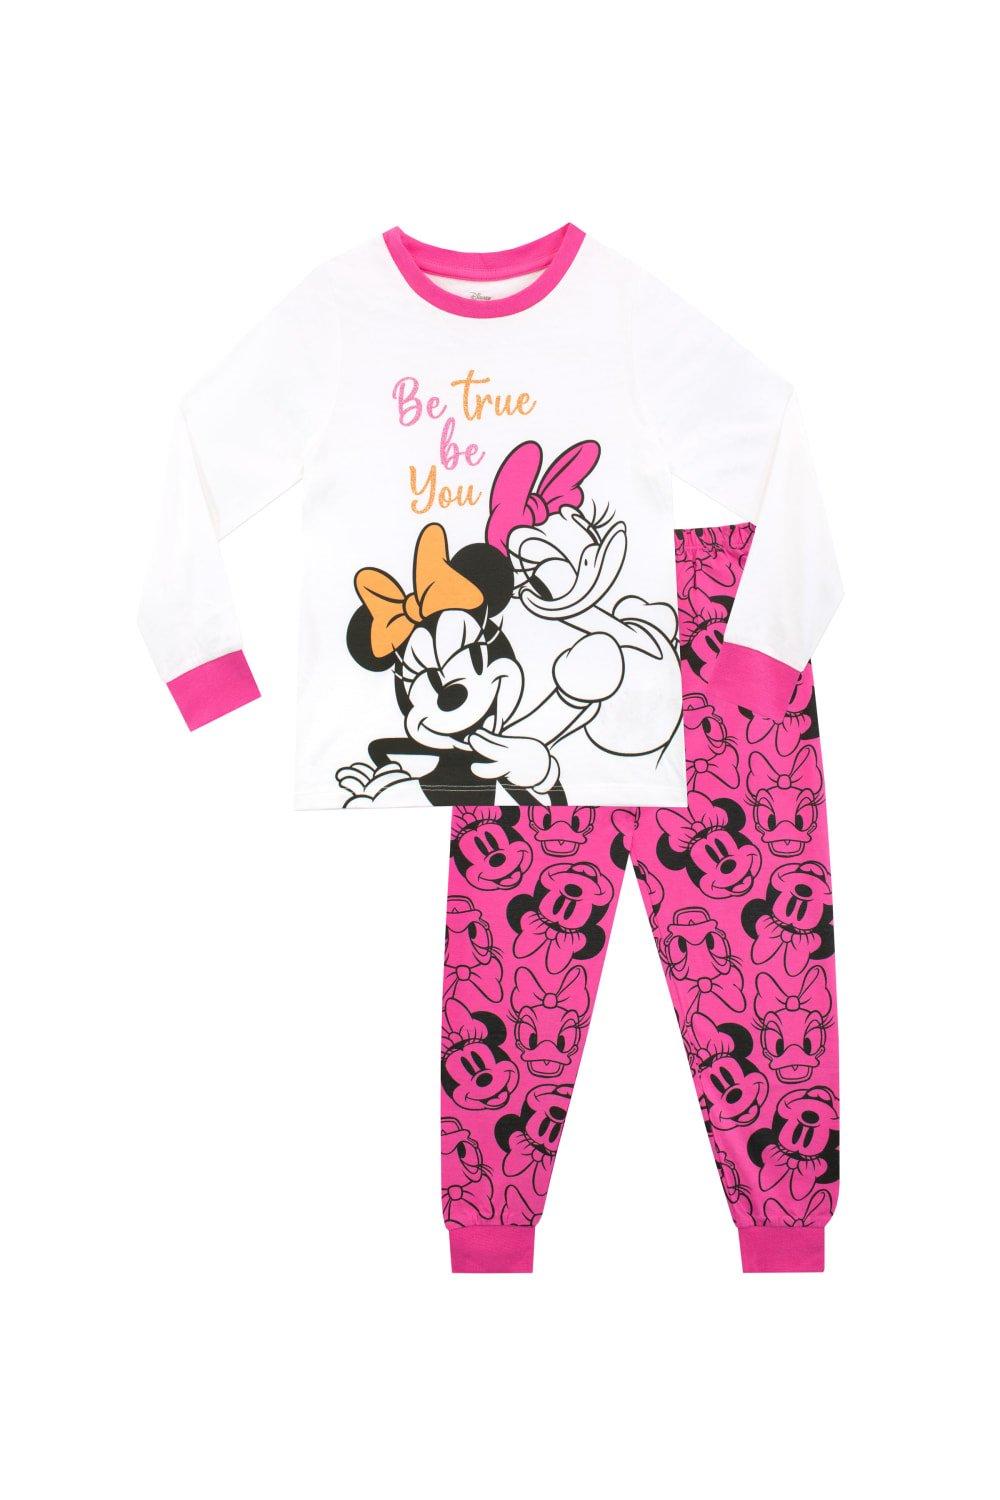 Minnie Mouse and Daisy Duck Pyjamas